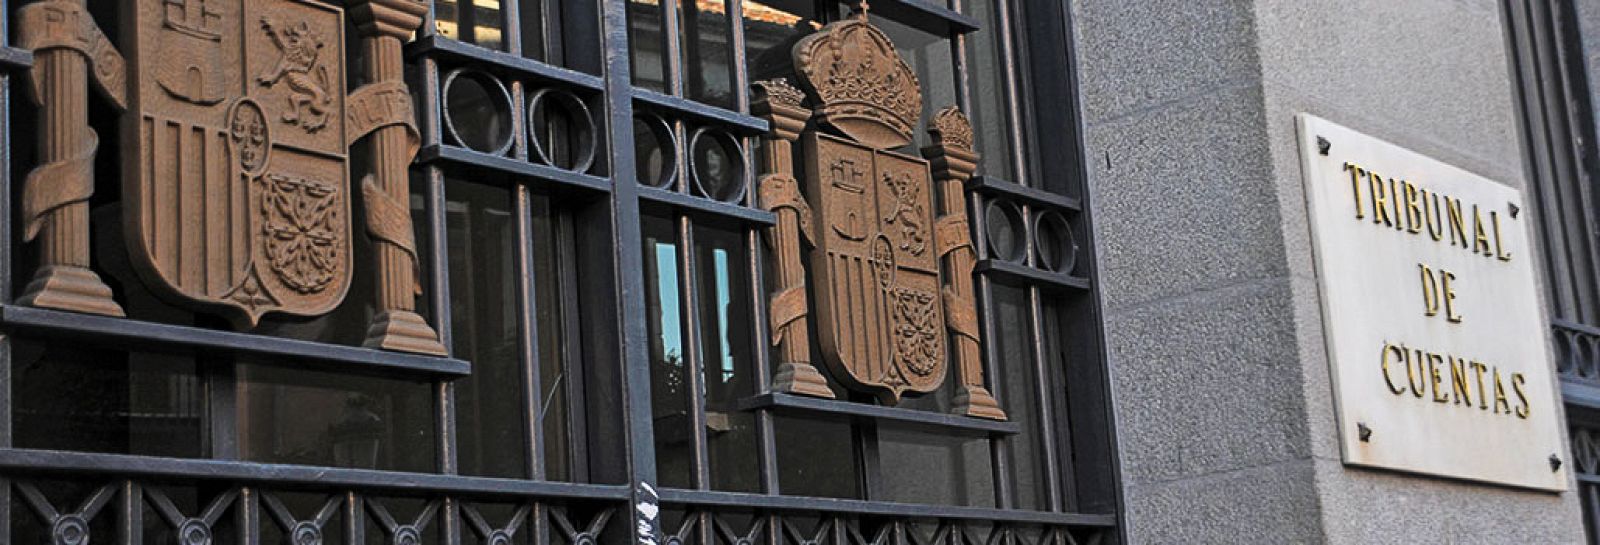 Puerta de entrada a la sede principal del Tribunal de Cuentas situada en la calle Fuencarral de Madrid